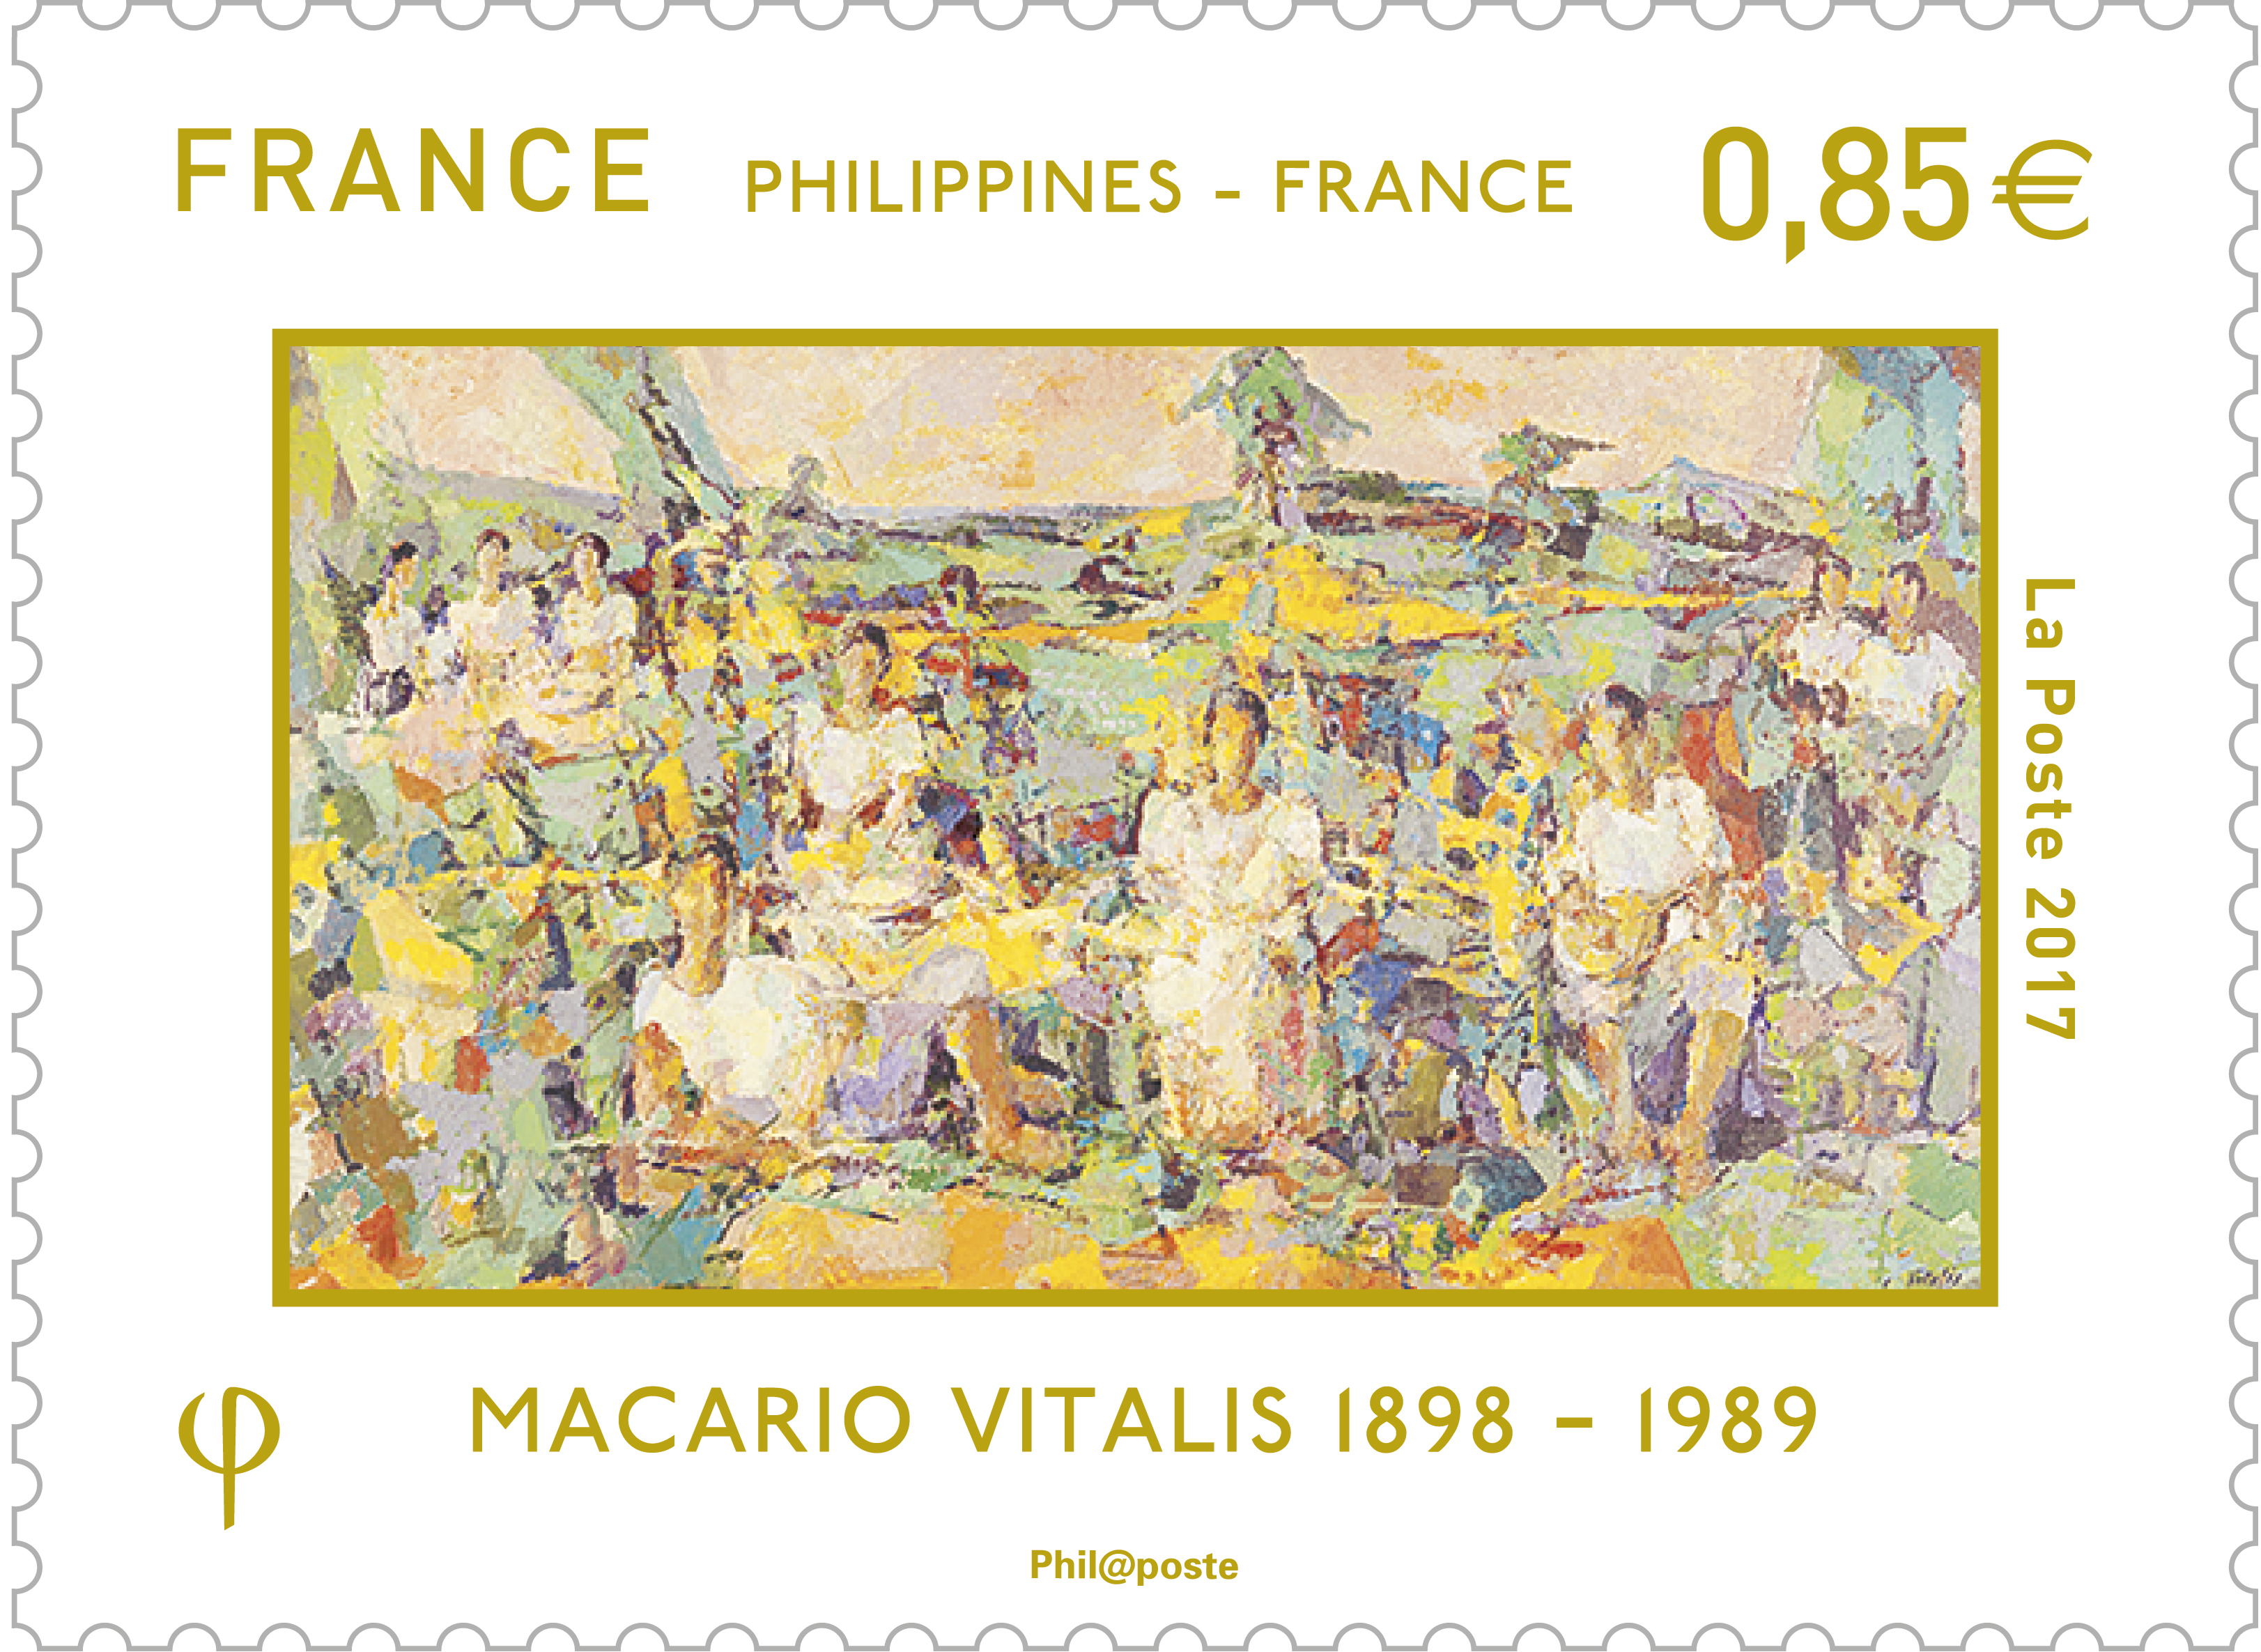 Philippines - France - Macario Vitalis 1898 - 1989